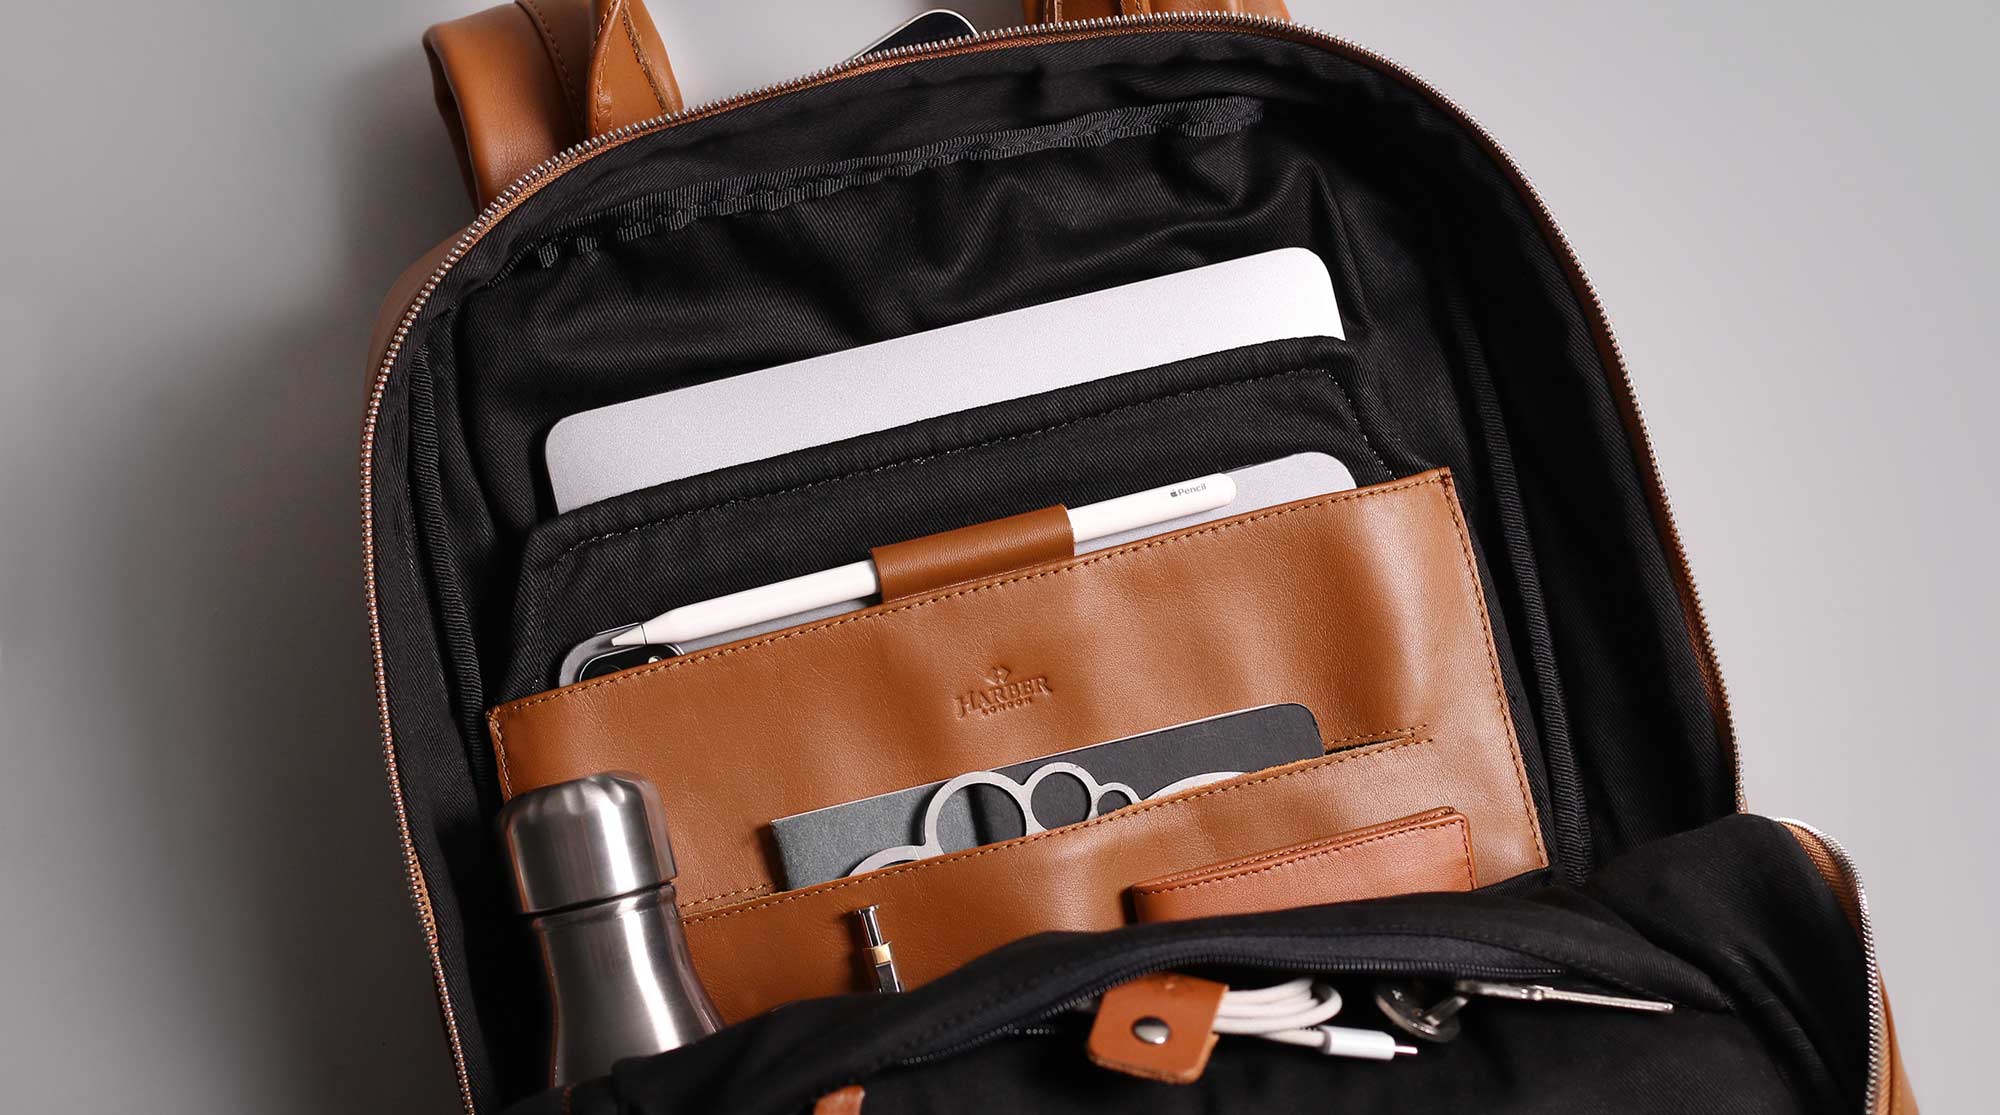 Spezielle gepolsterte Taschen für Laptops, iPad und EDC-Ausrüstung.